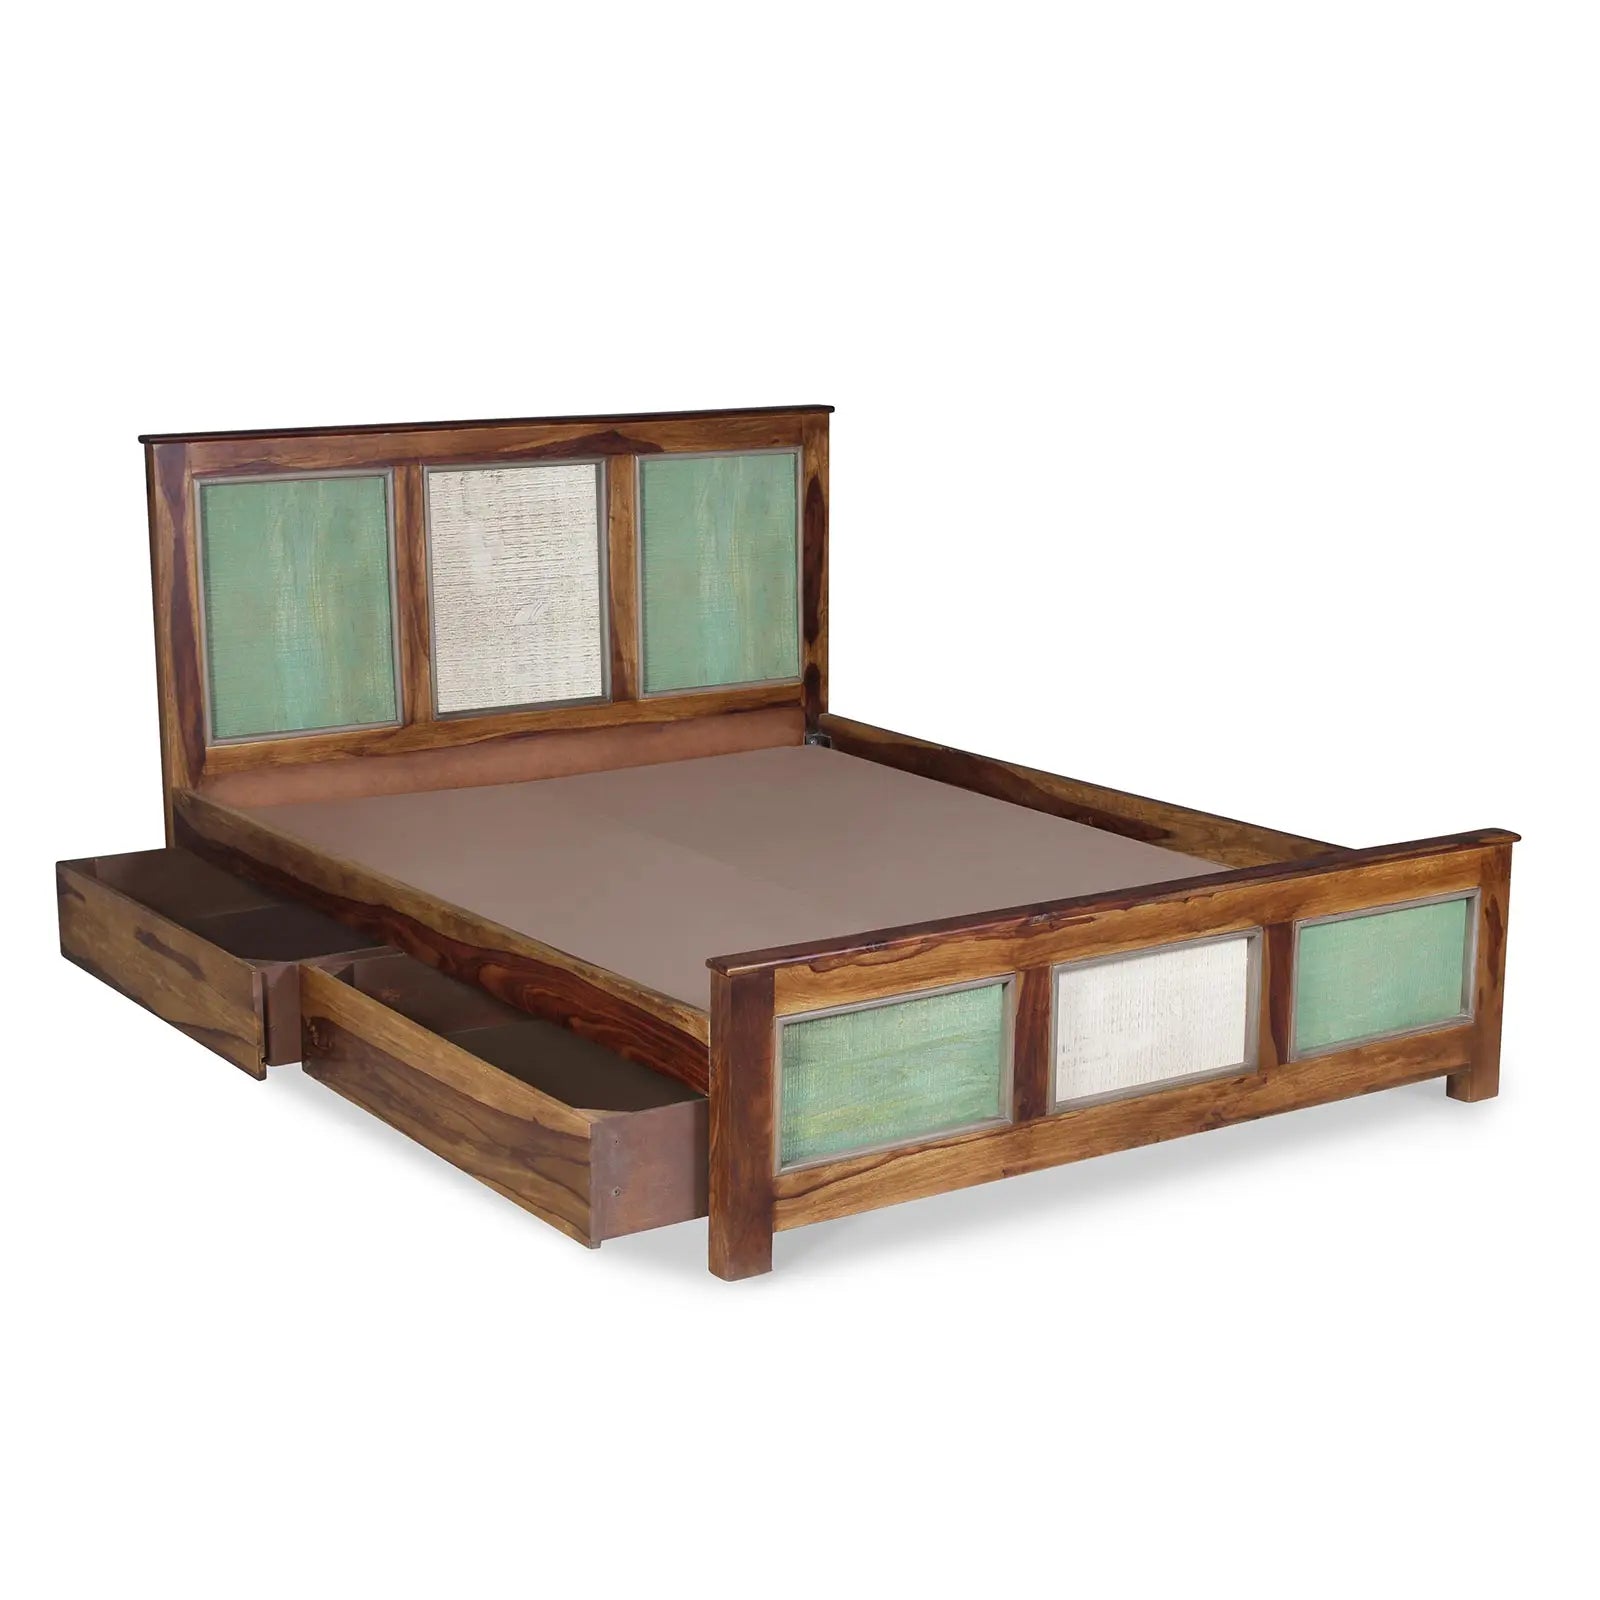 Ellis Solid Wood Bed in vintage Finish